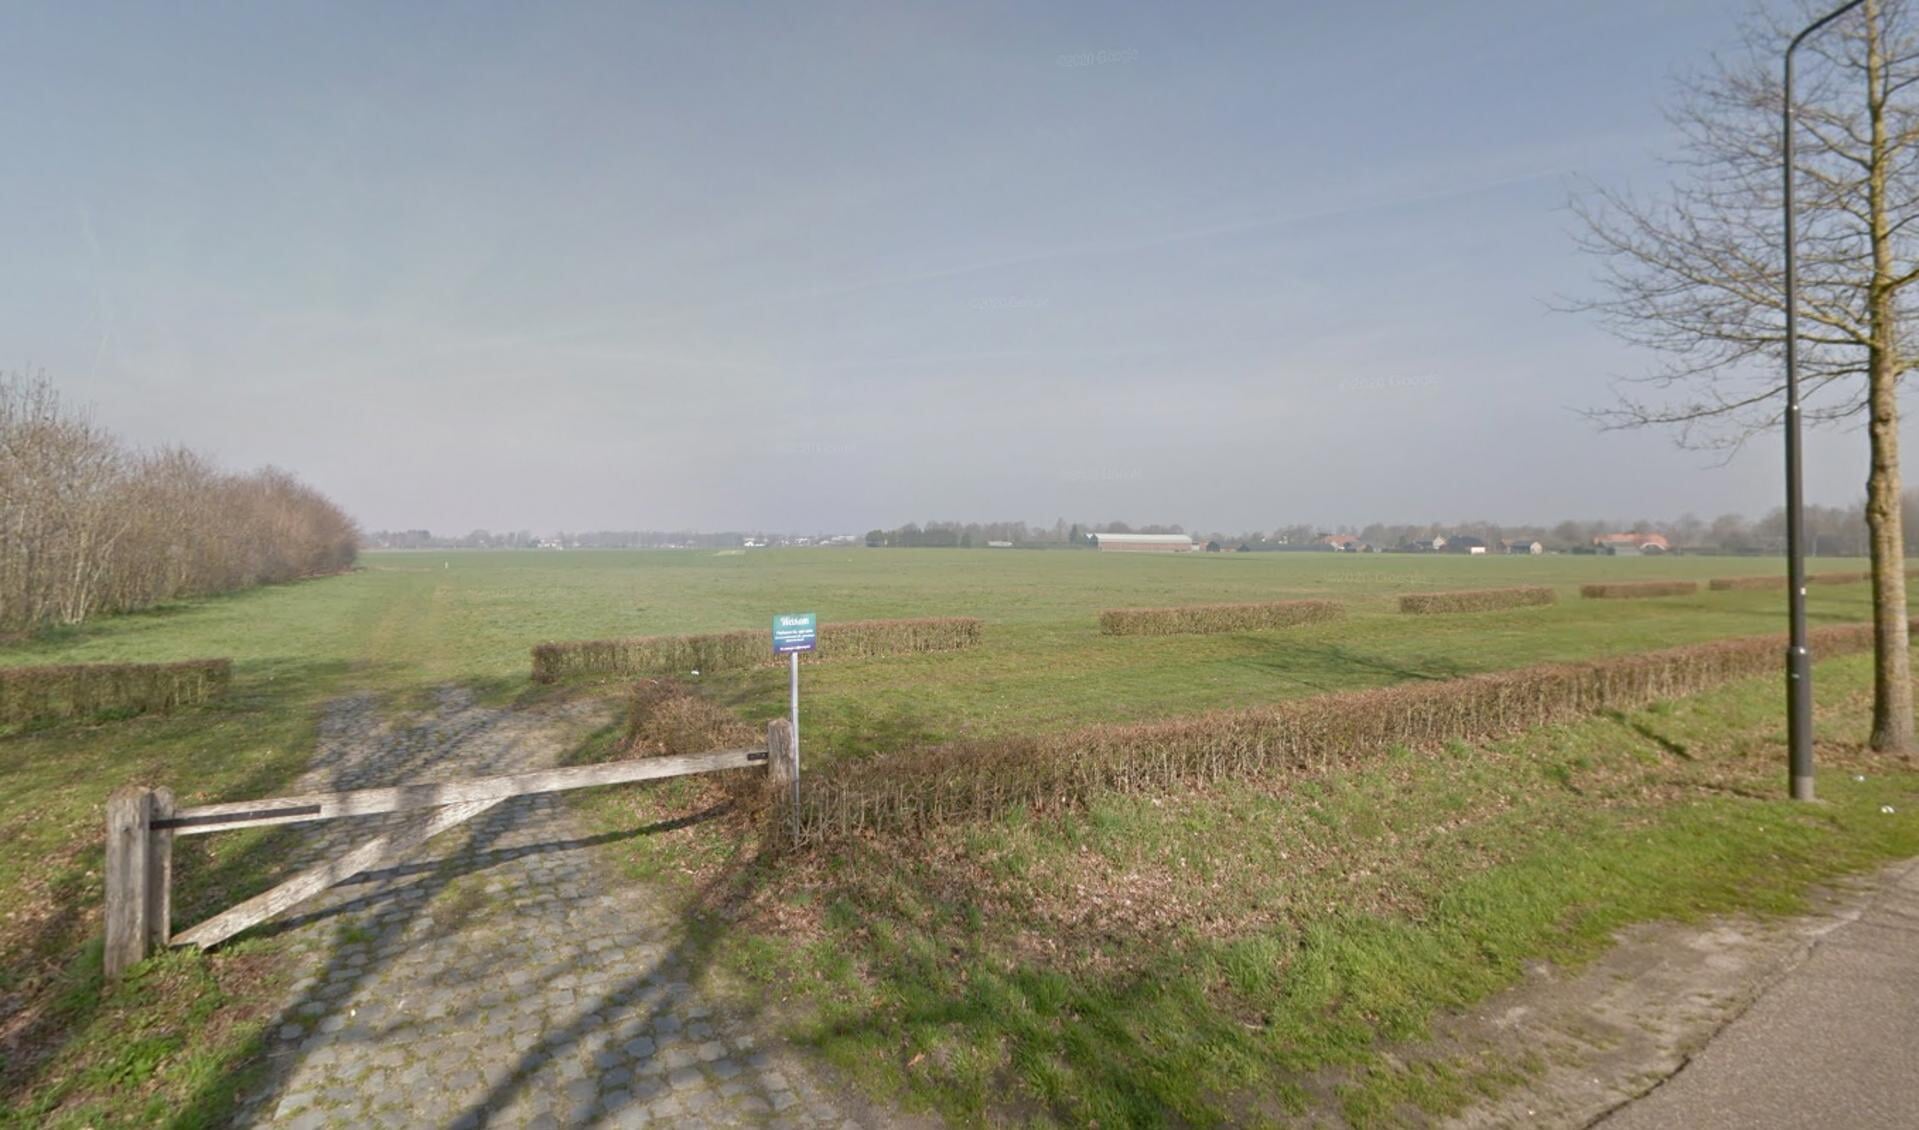 Het overloopparkeerterrein van Hemelrijk, aan het eind komt mogelijk de nieuwe N605.